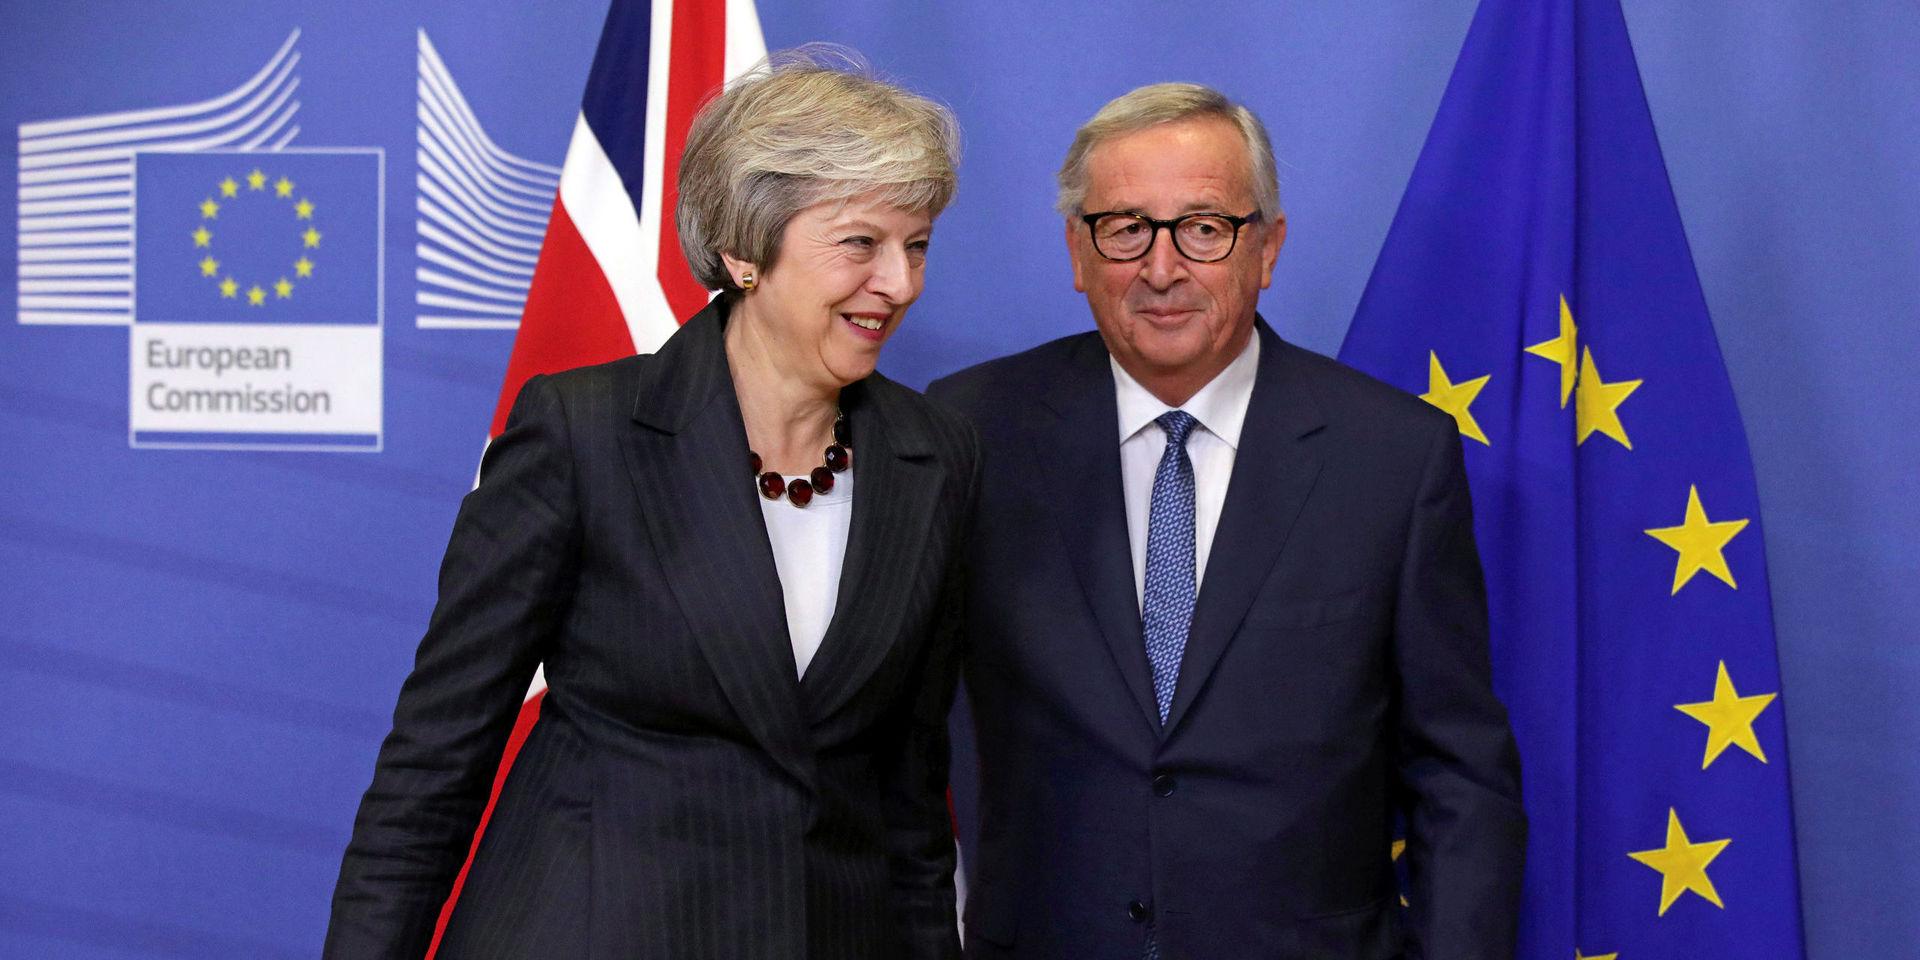 Går skilda vägar. I veckan träffades Storbritanniens premiärminister Theresa May och EU-kommissionens ordförande Jean-Claude Juncker för att bana väg för Brexit.